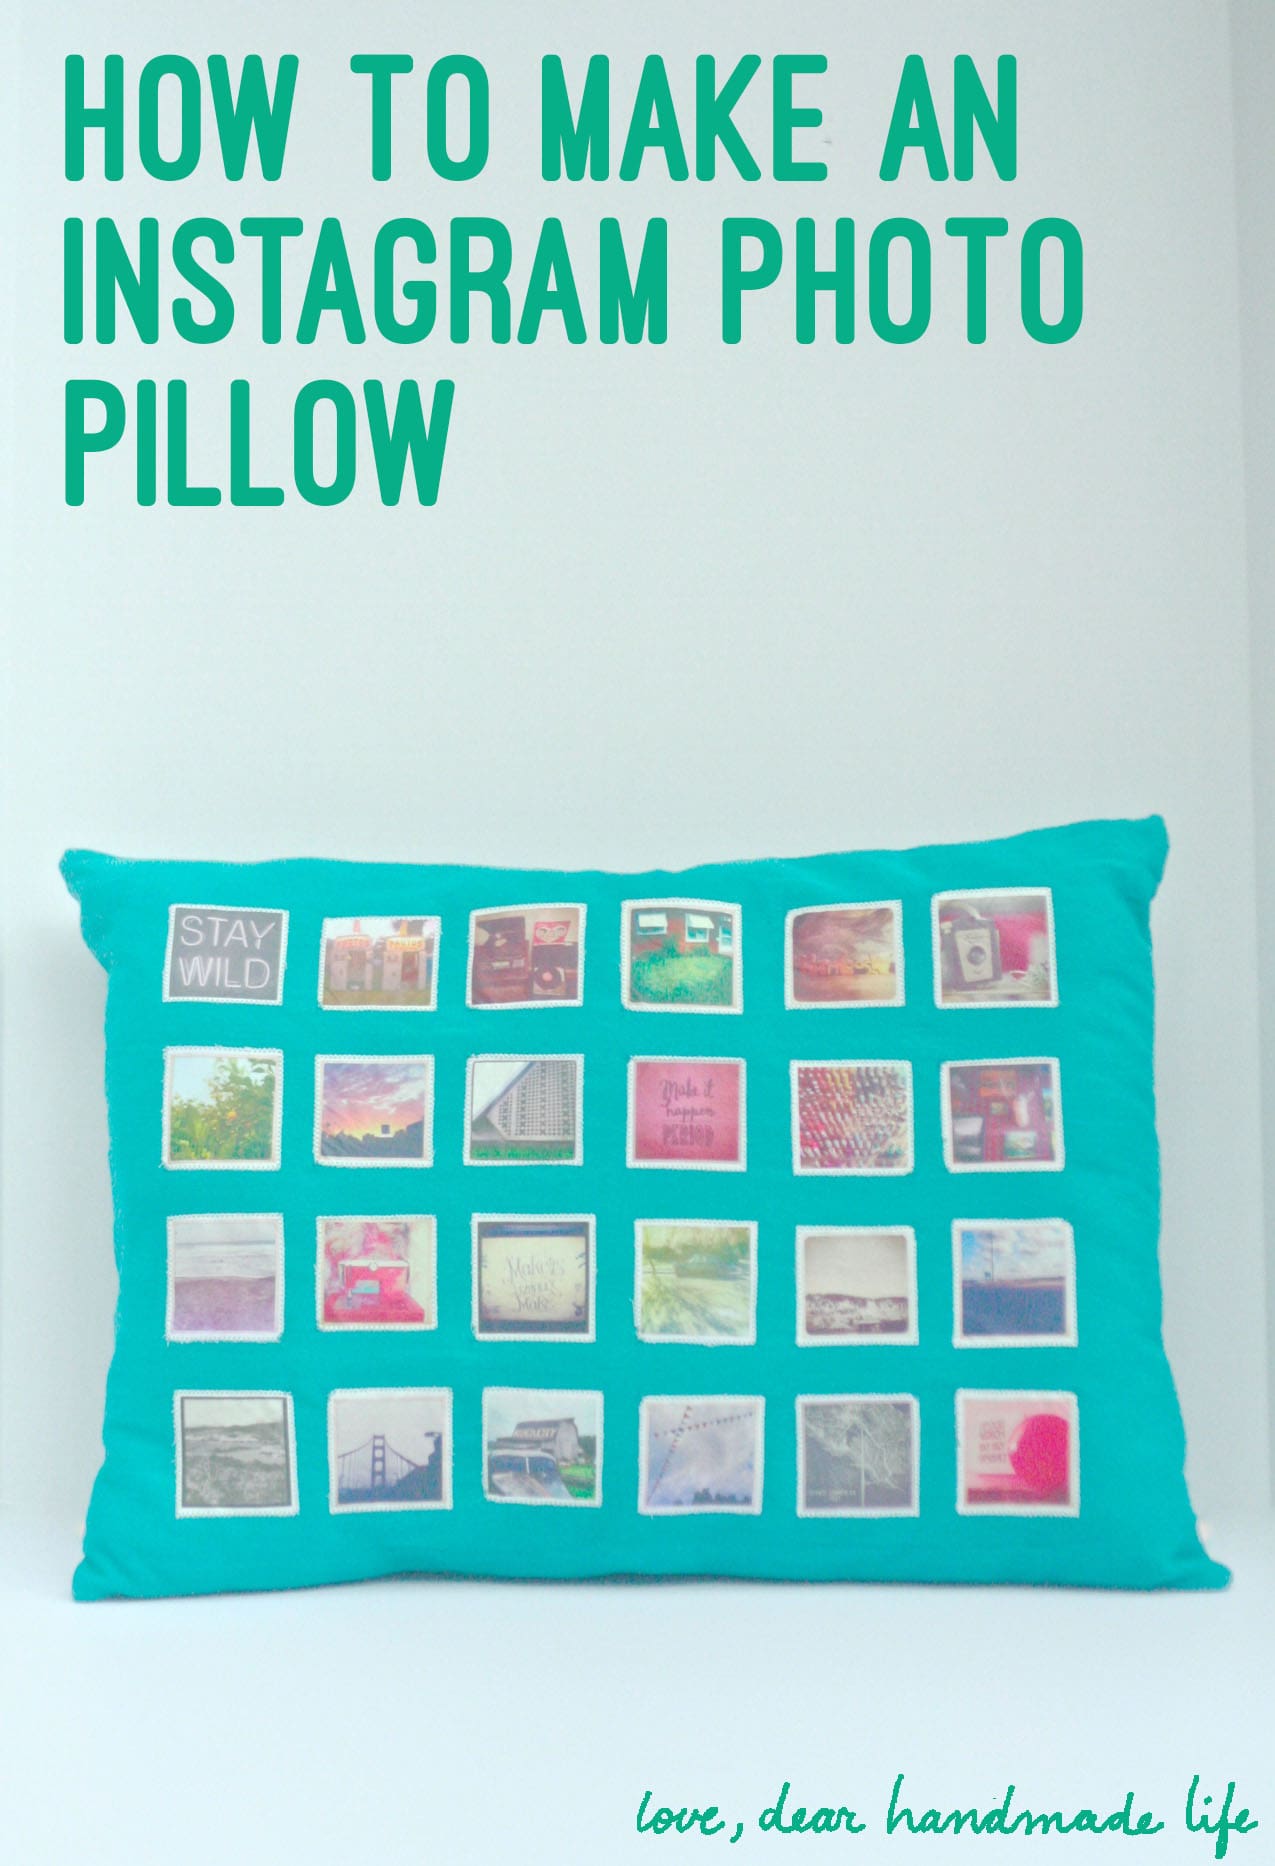 how-to-make-instagram-photo-pillow-applique-diy-dear-handmade-life